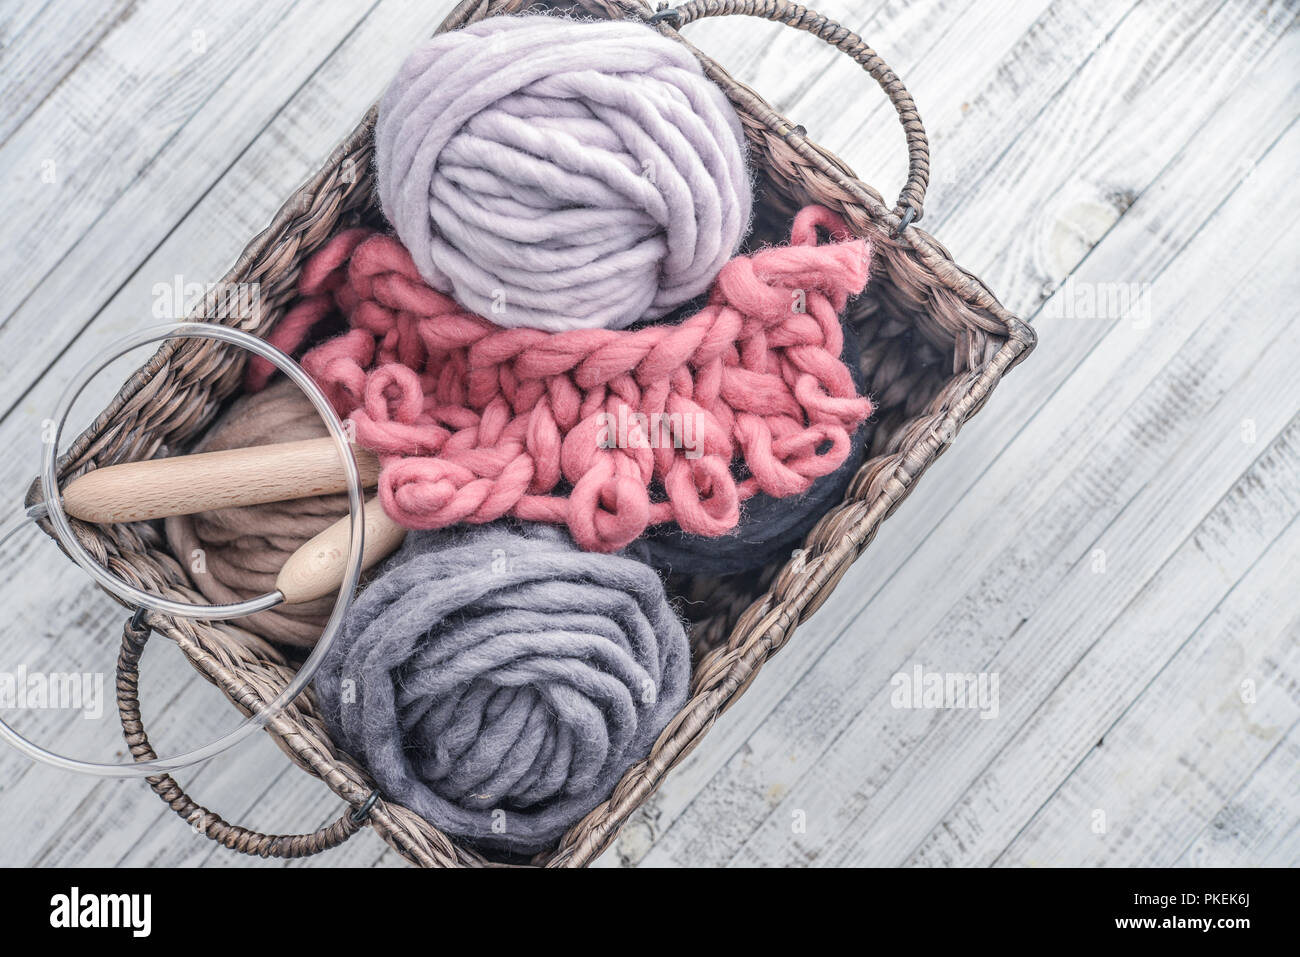 Boules de fil de laine merino chunky super avec des aiguilles dans le panier rustique sur fond bleu clair. Banque D'Images